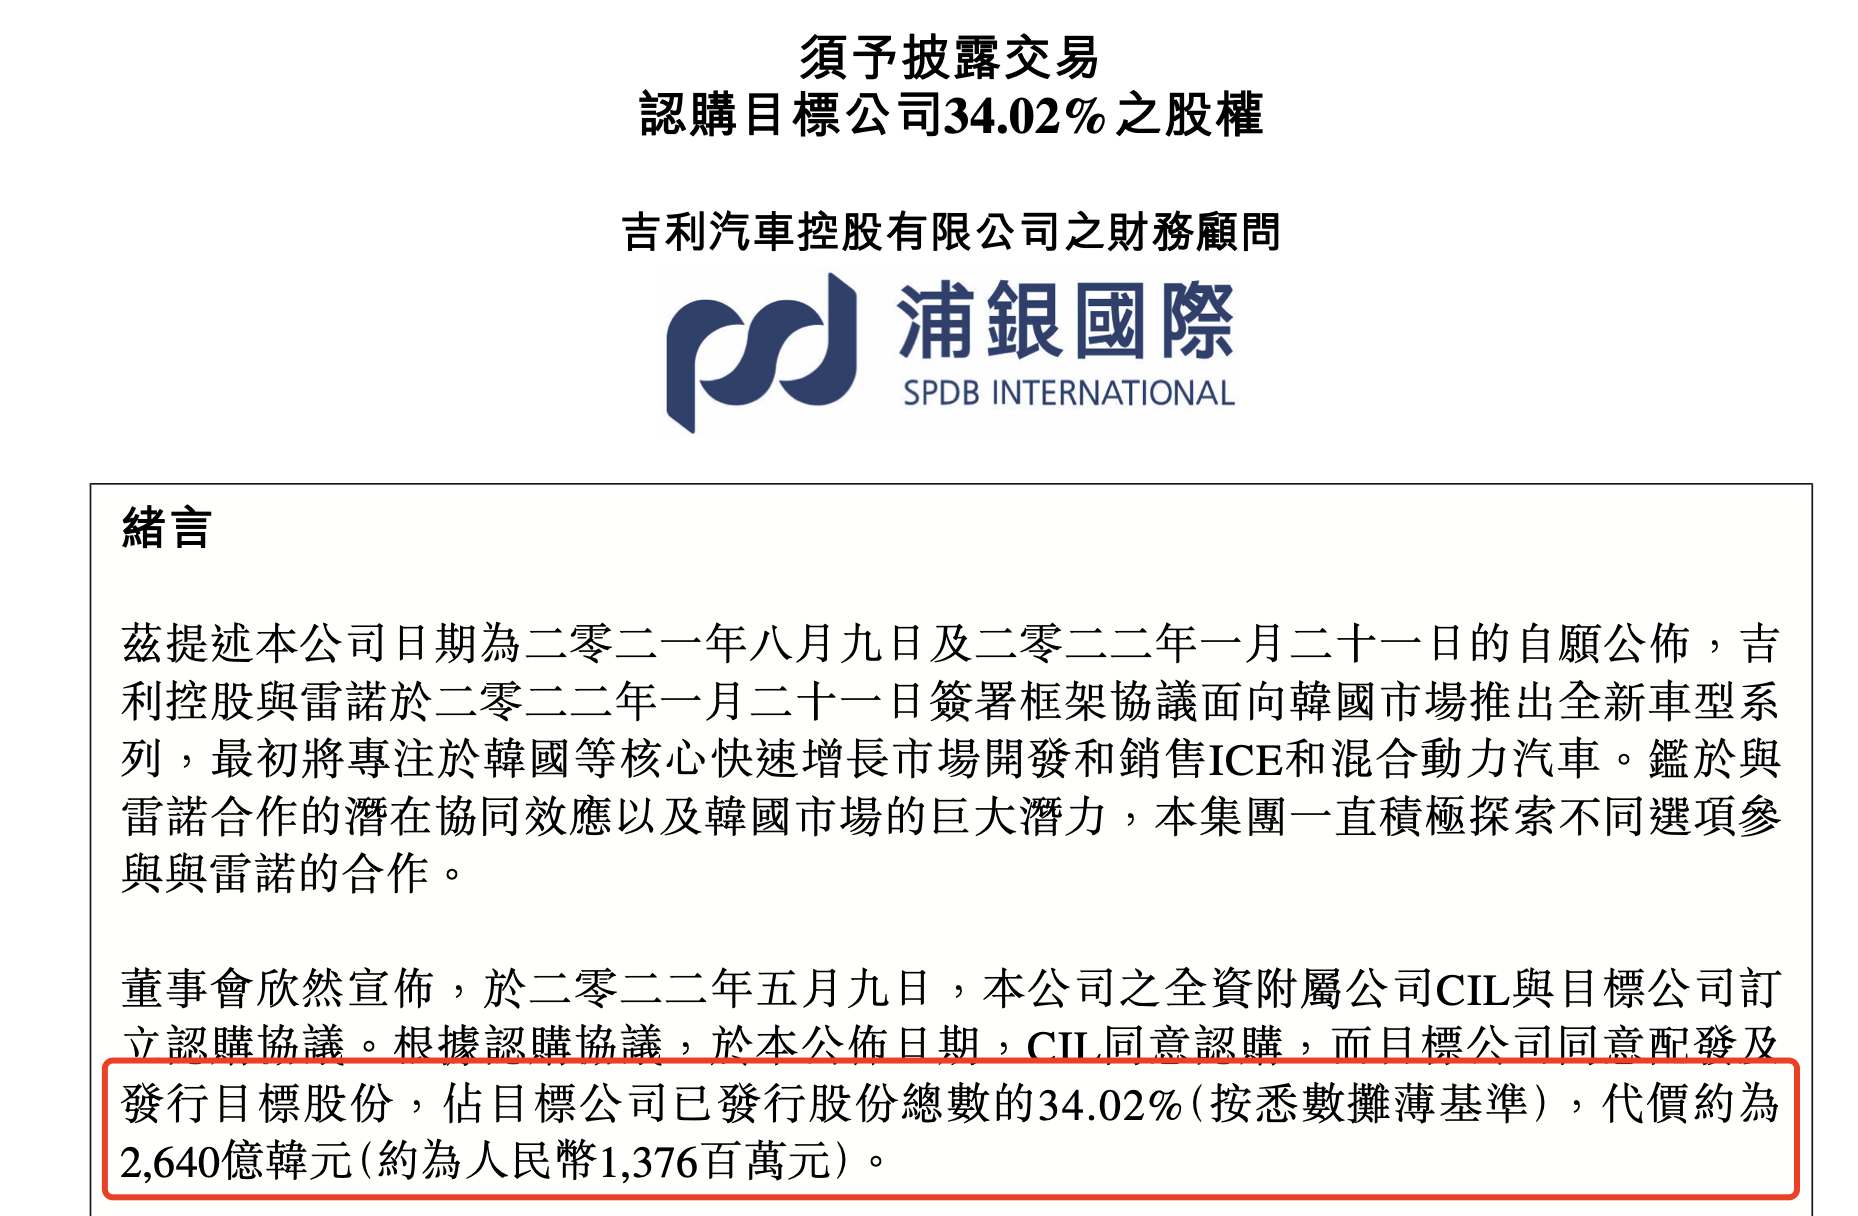 共同出击韩国市场 吉利豪掷近14亿收购雷诺韩国股权